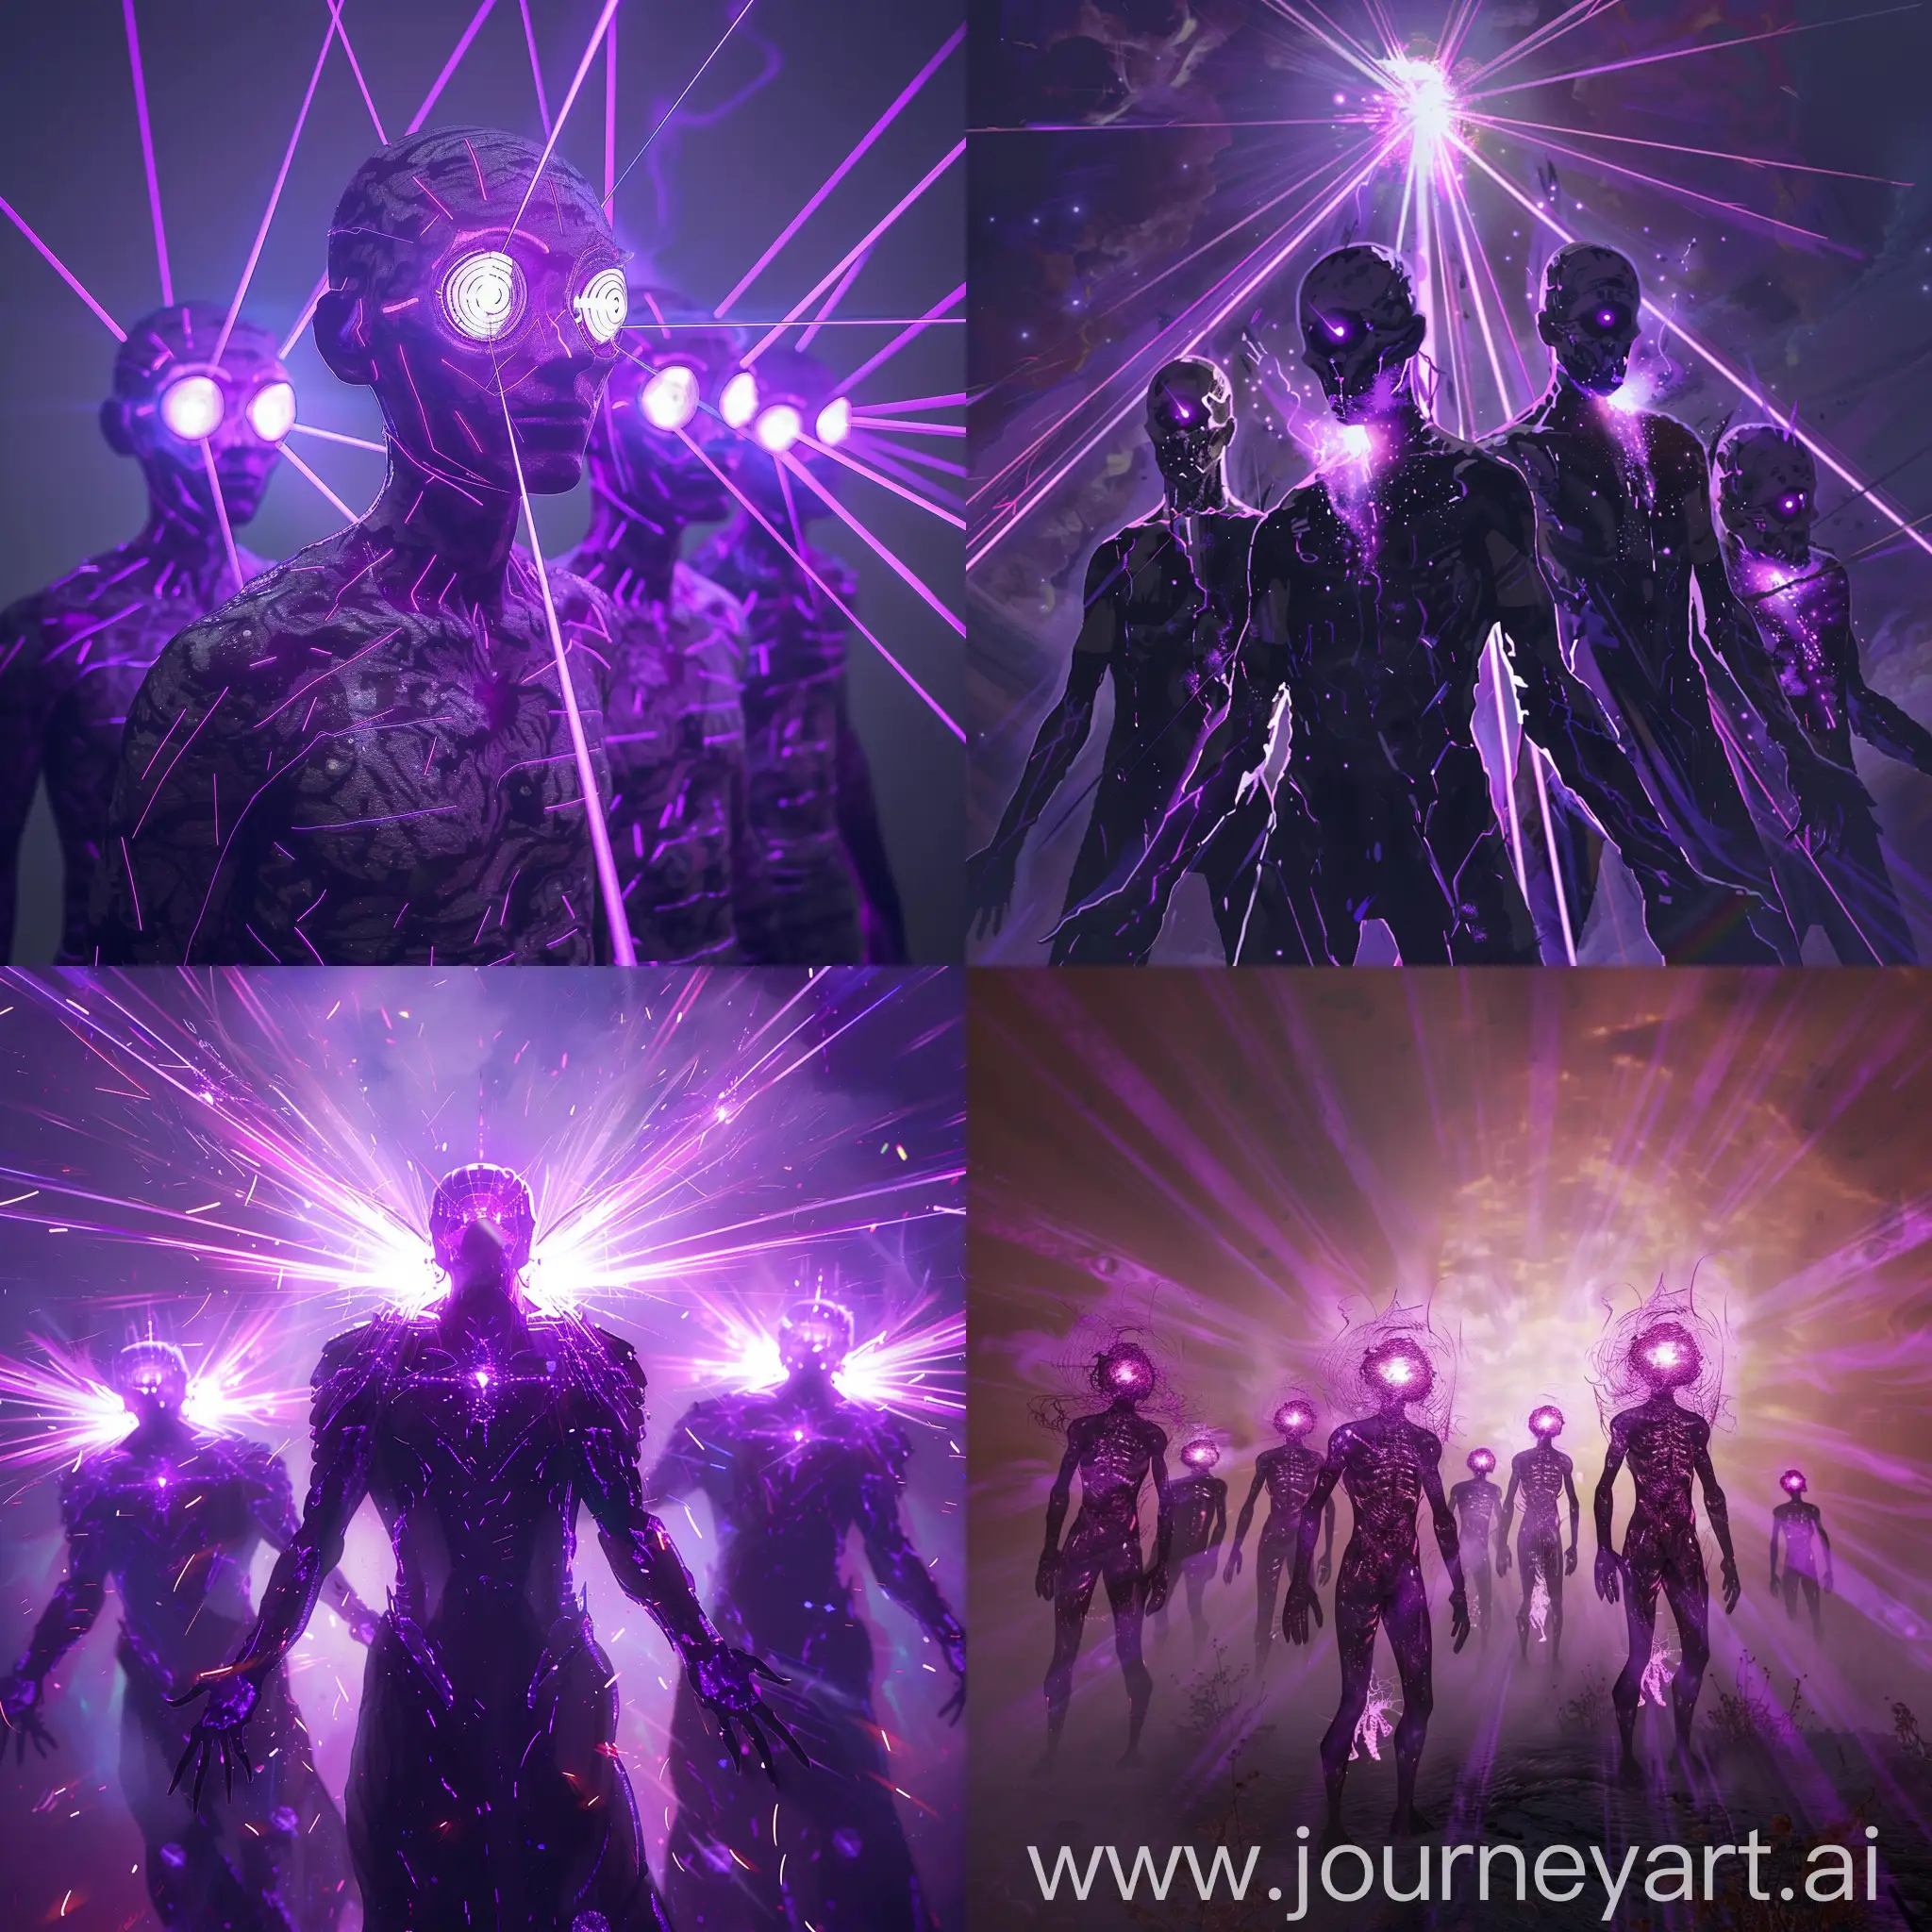 Vibrant-Purple-Rays-Emitting-from-Figures-with-Illuminated-Eyes